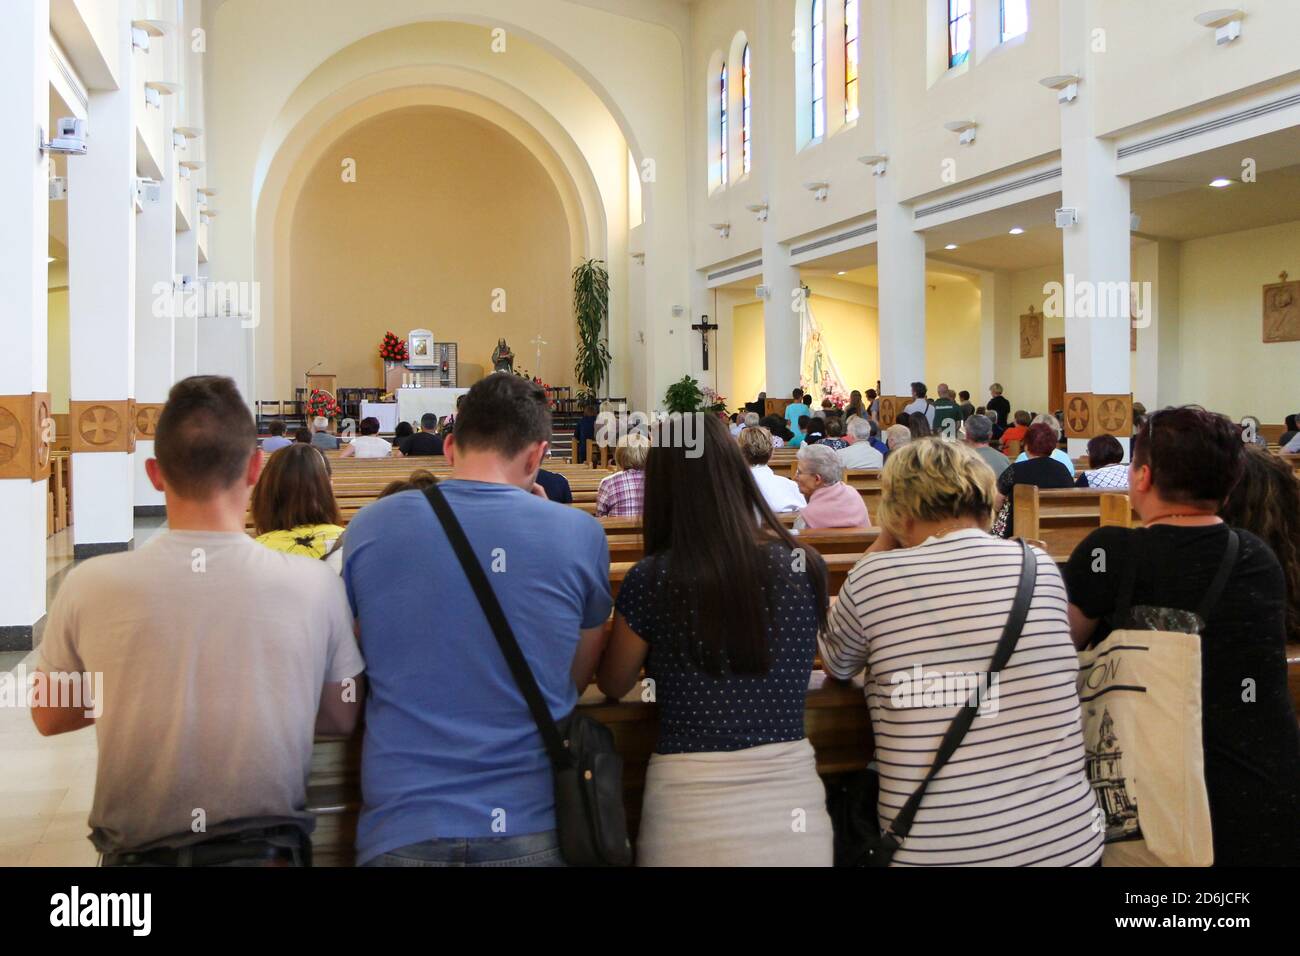 Medjugorje, BiH. 2016/6/4. Pèlerins priant dans l'église Saint-Jacques à Medjugorje. Banque D'Images